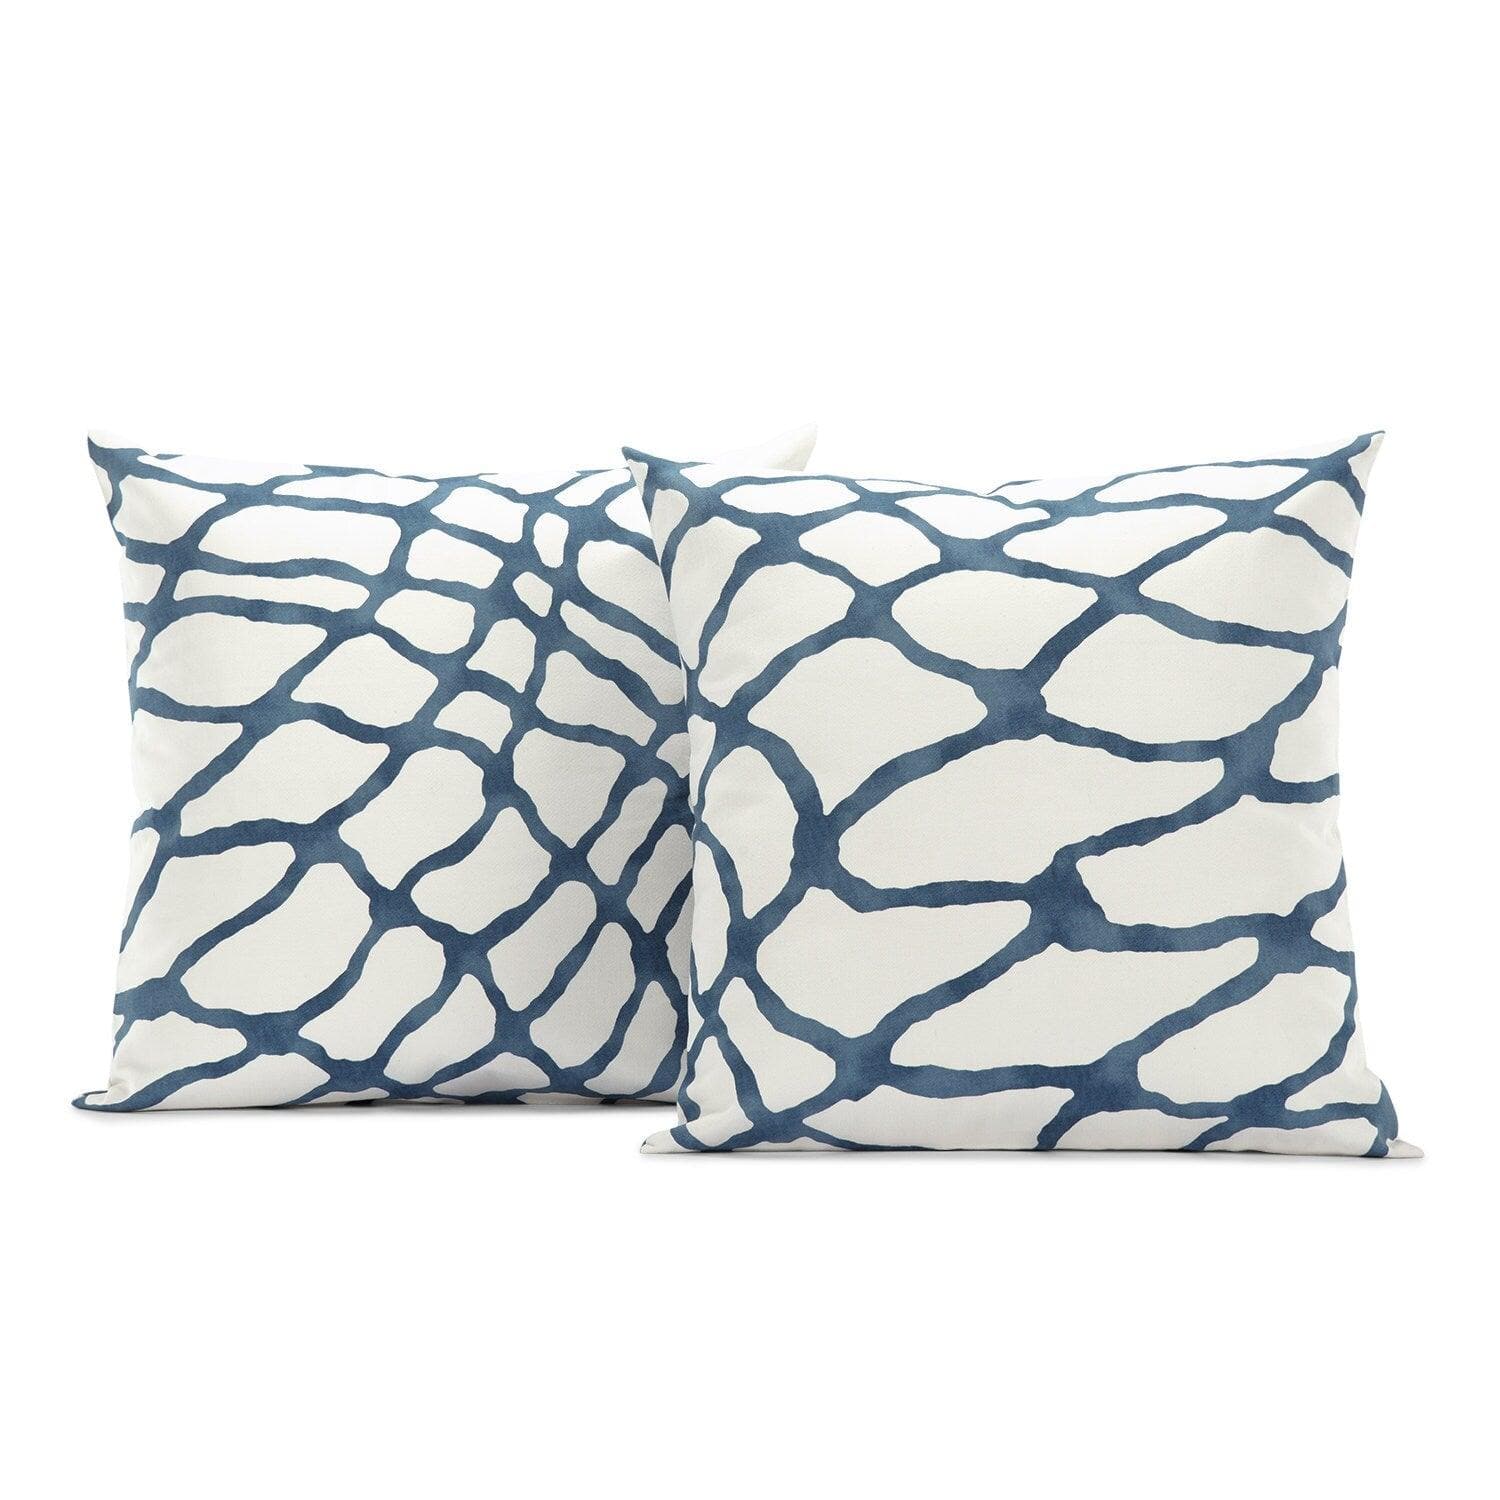 Ellis Blue Printed Cotton Cushion Covers - Pair